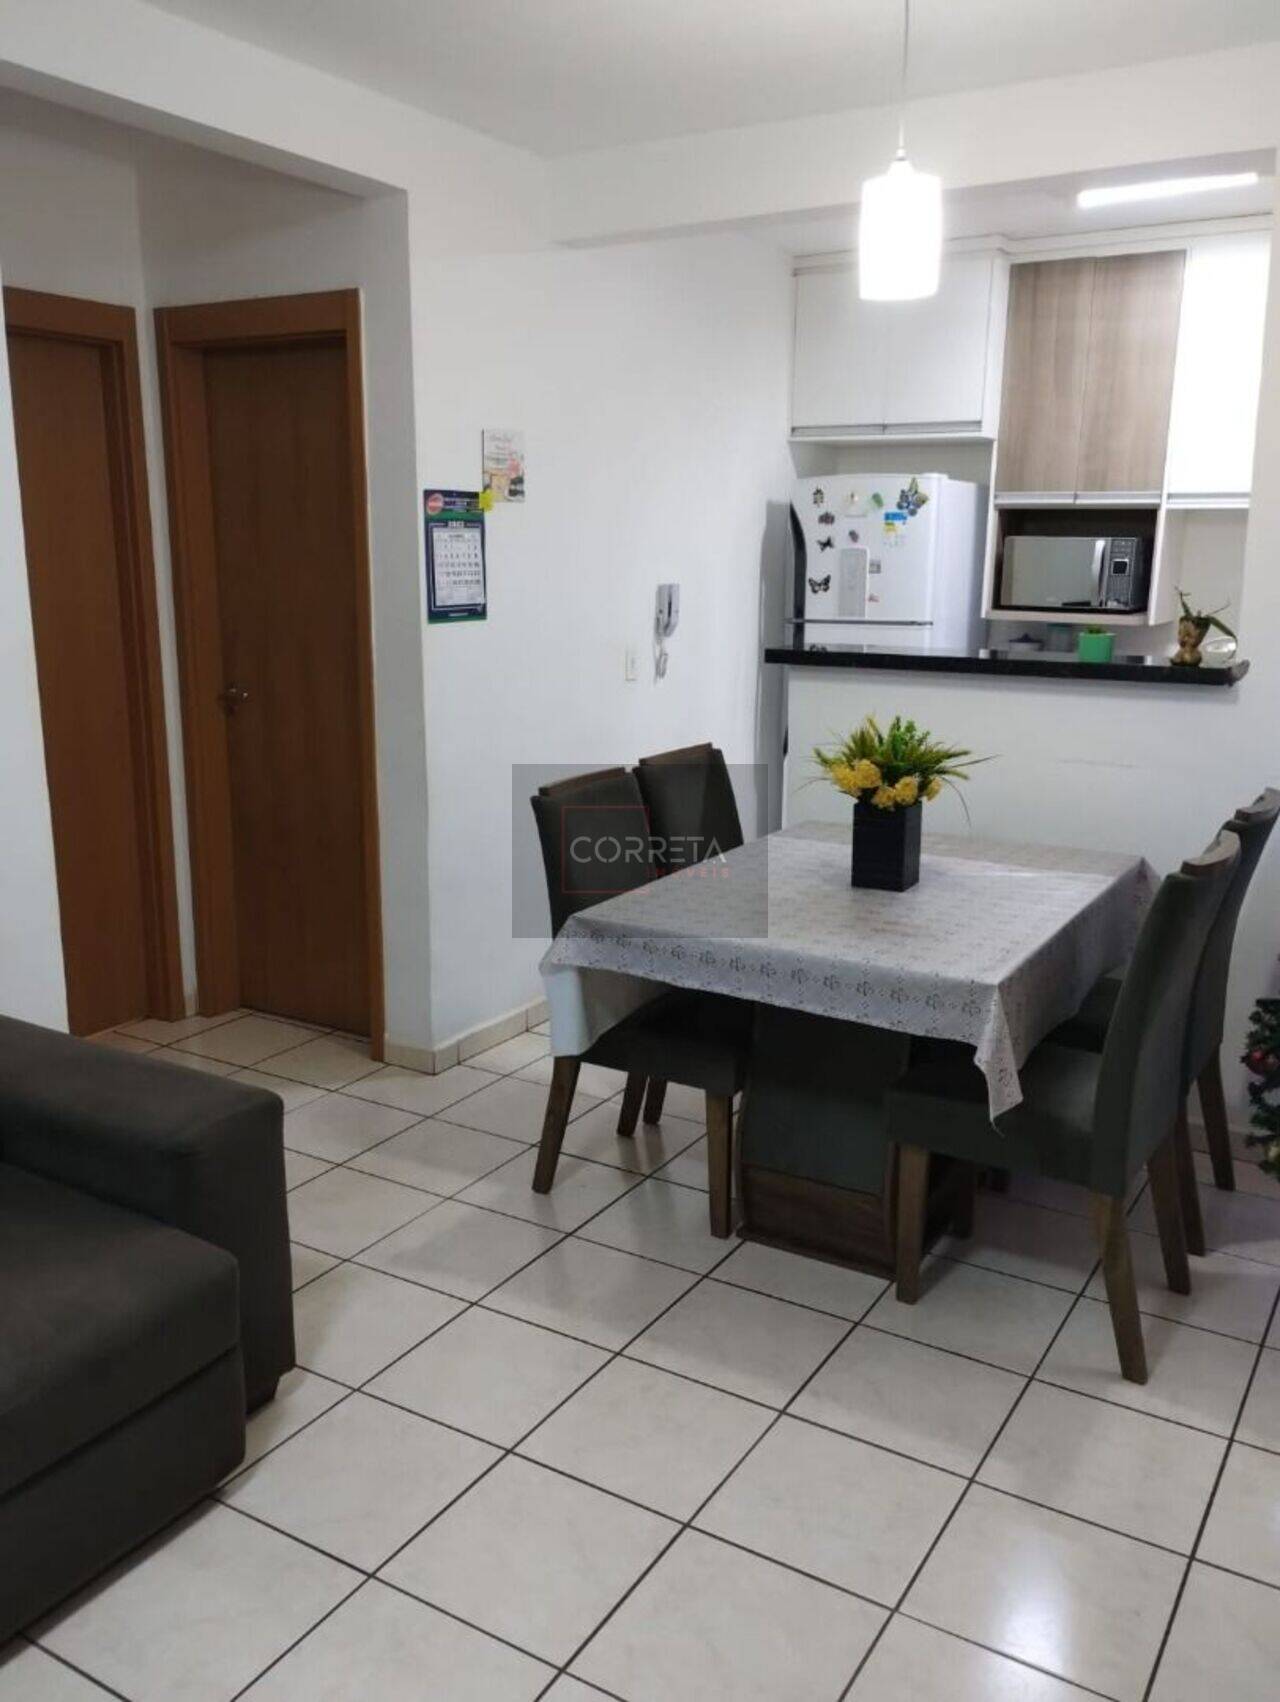 Apartamento Residencial Palmeiras, Uberaba - MG